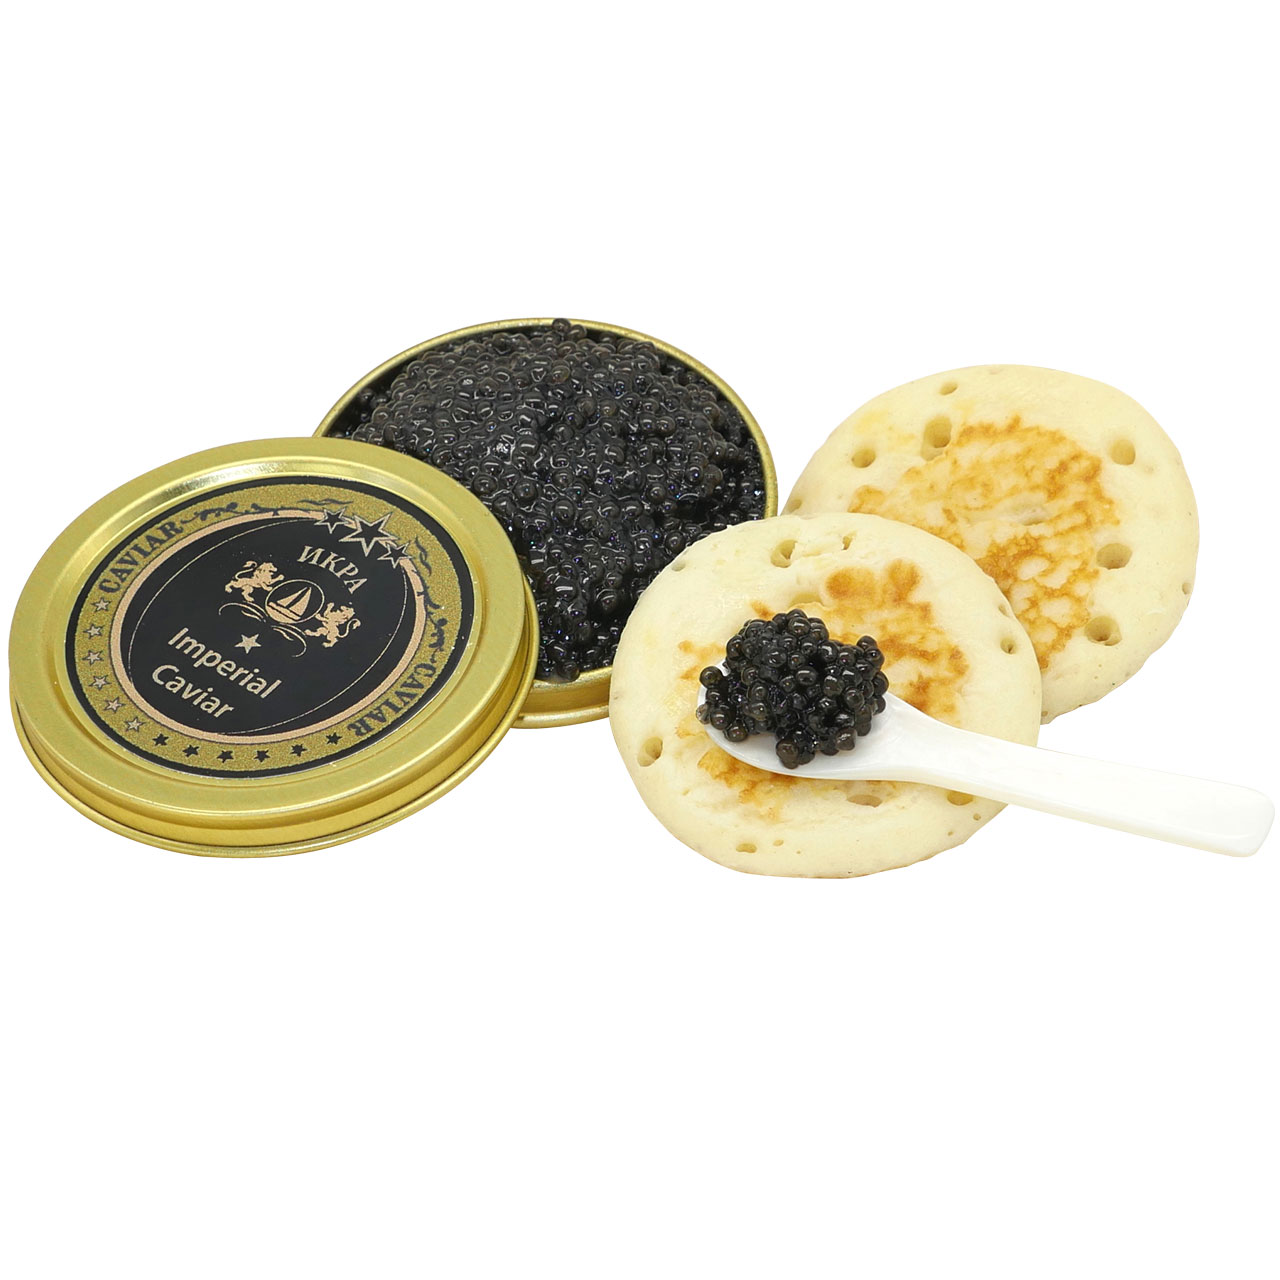 Kaviar-Set 3 x 30g (Beluga, Osietra, Imperial)